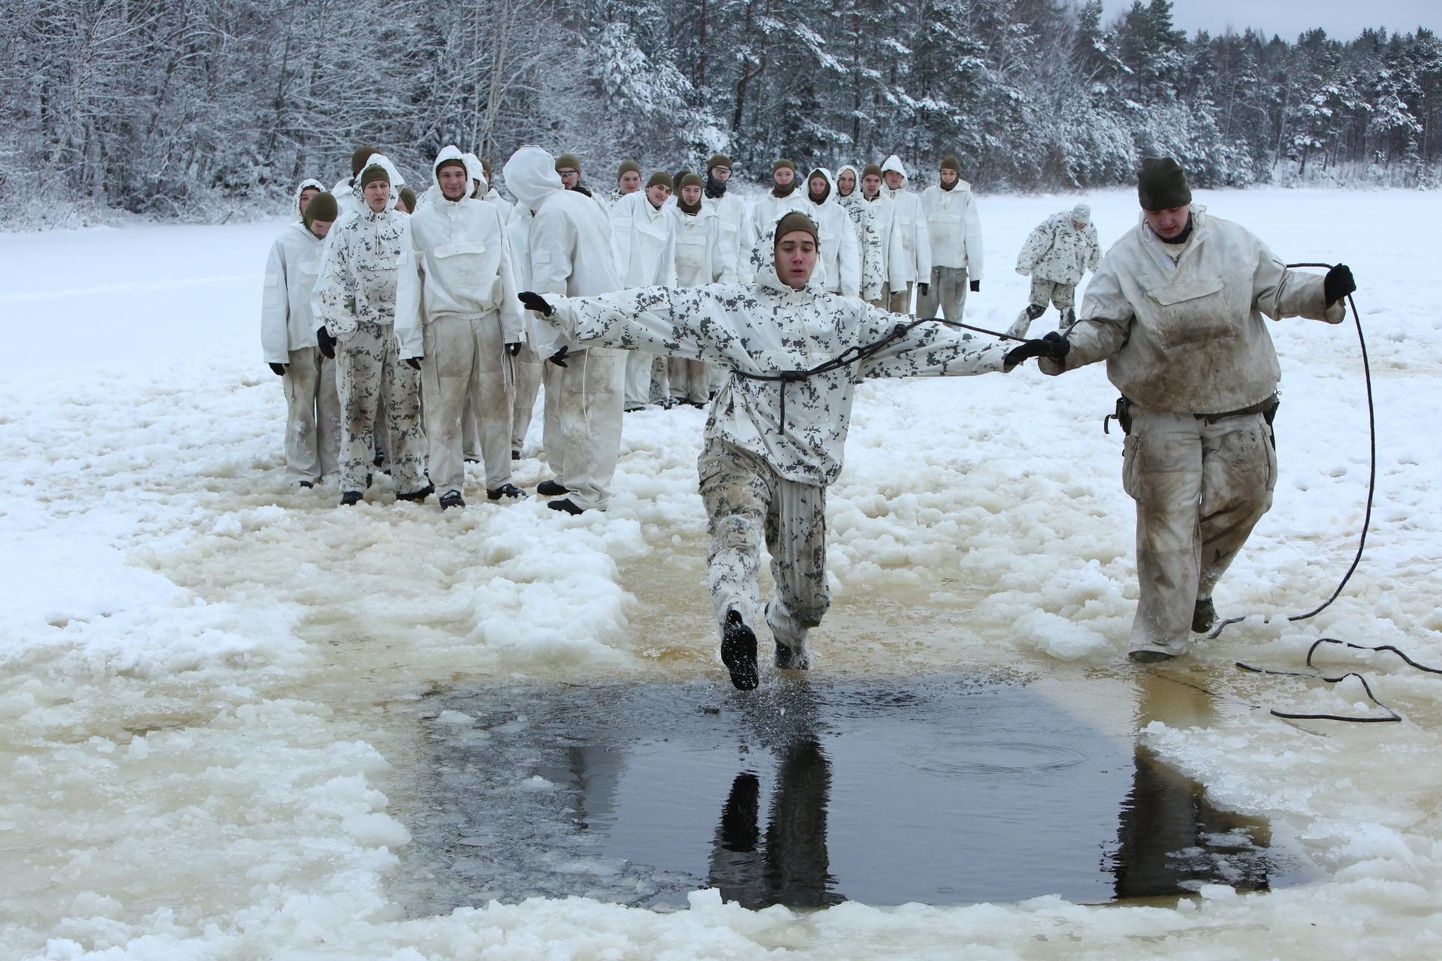 Iga sõdur sai proovida nii hädalise aitamist kui ka ise külmas vees hakkama saamist.